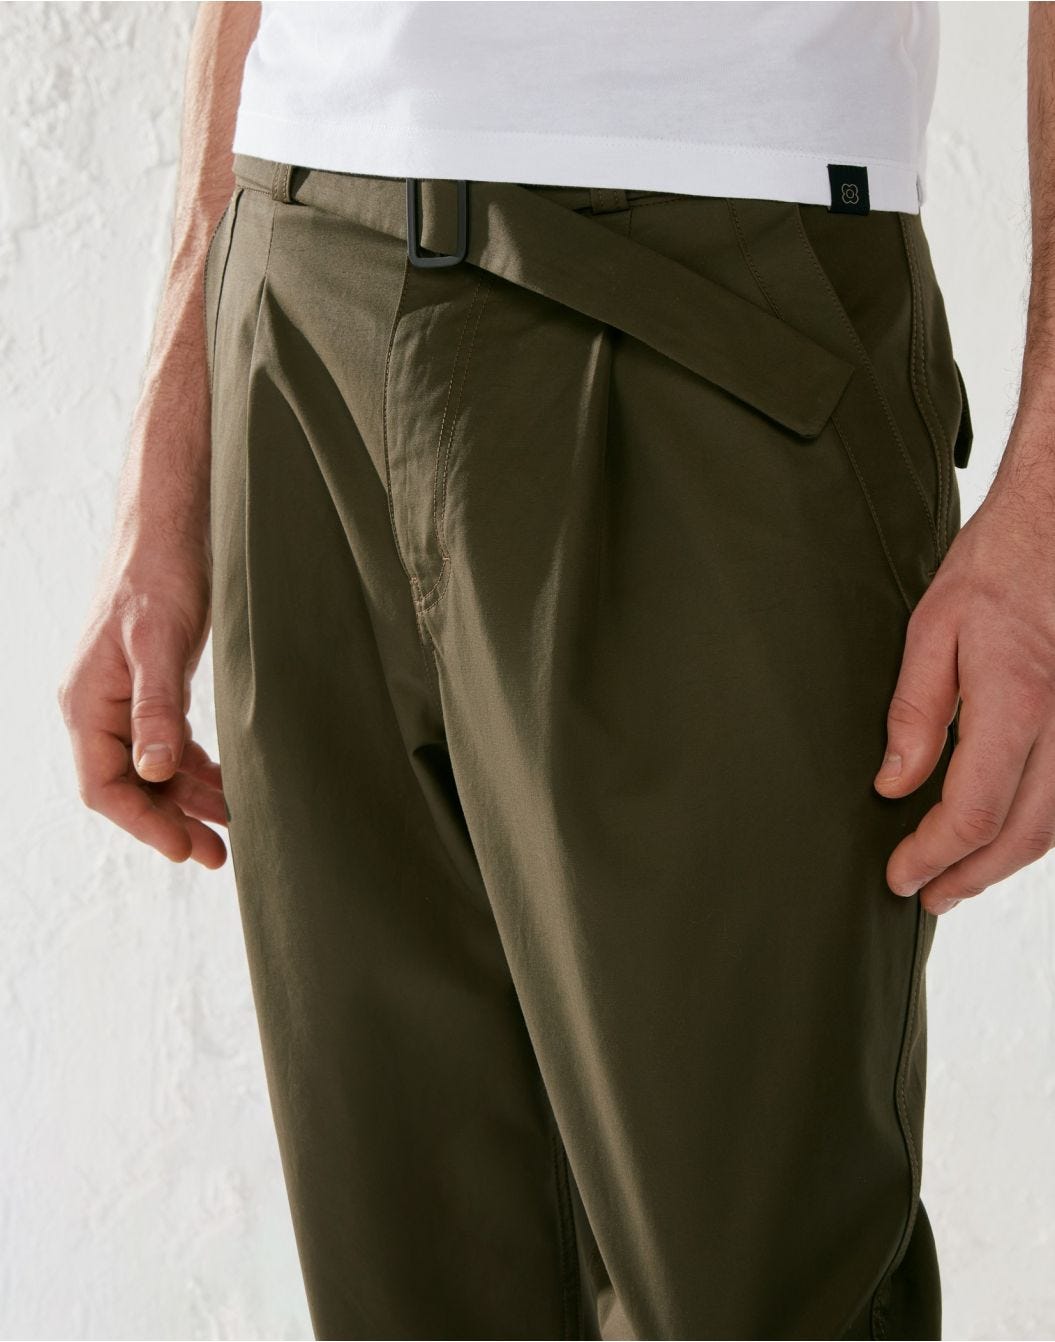 Green cotton and nylon comfort trousers - Lardini by Yosuke Aizawa